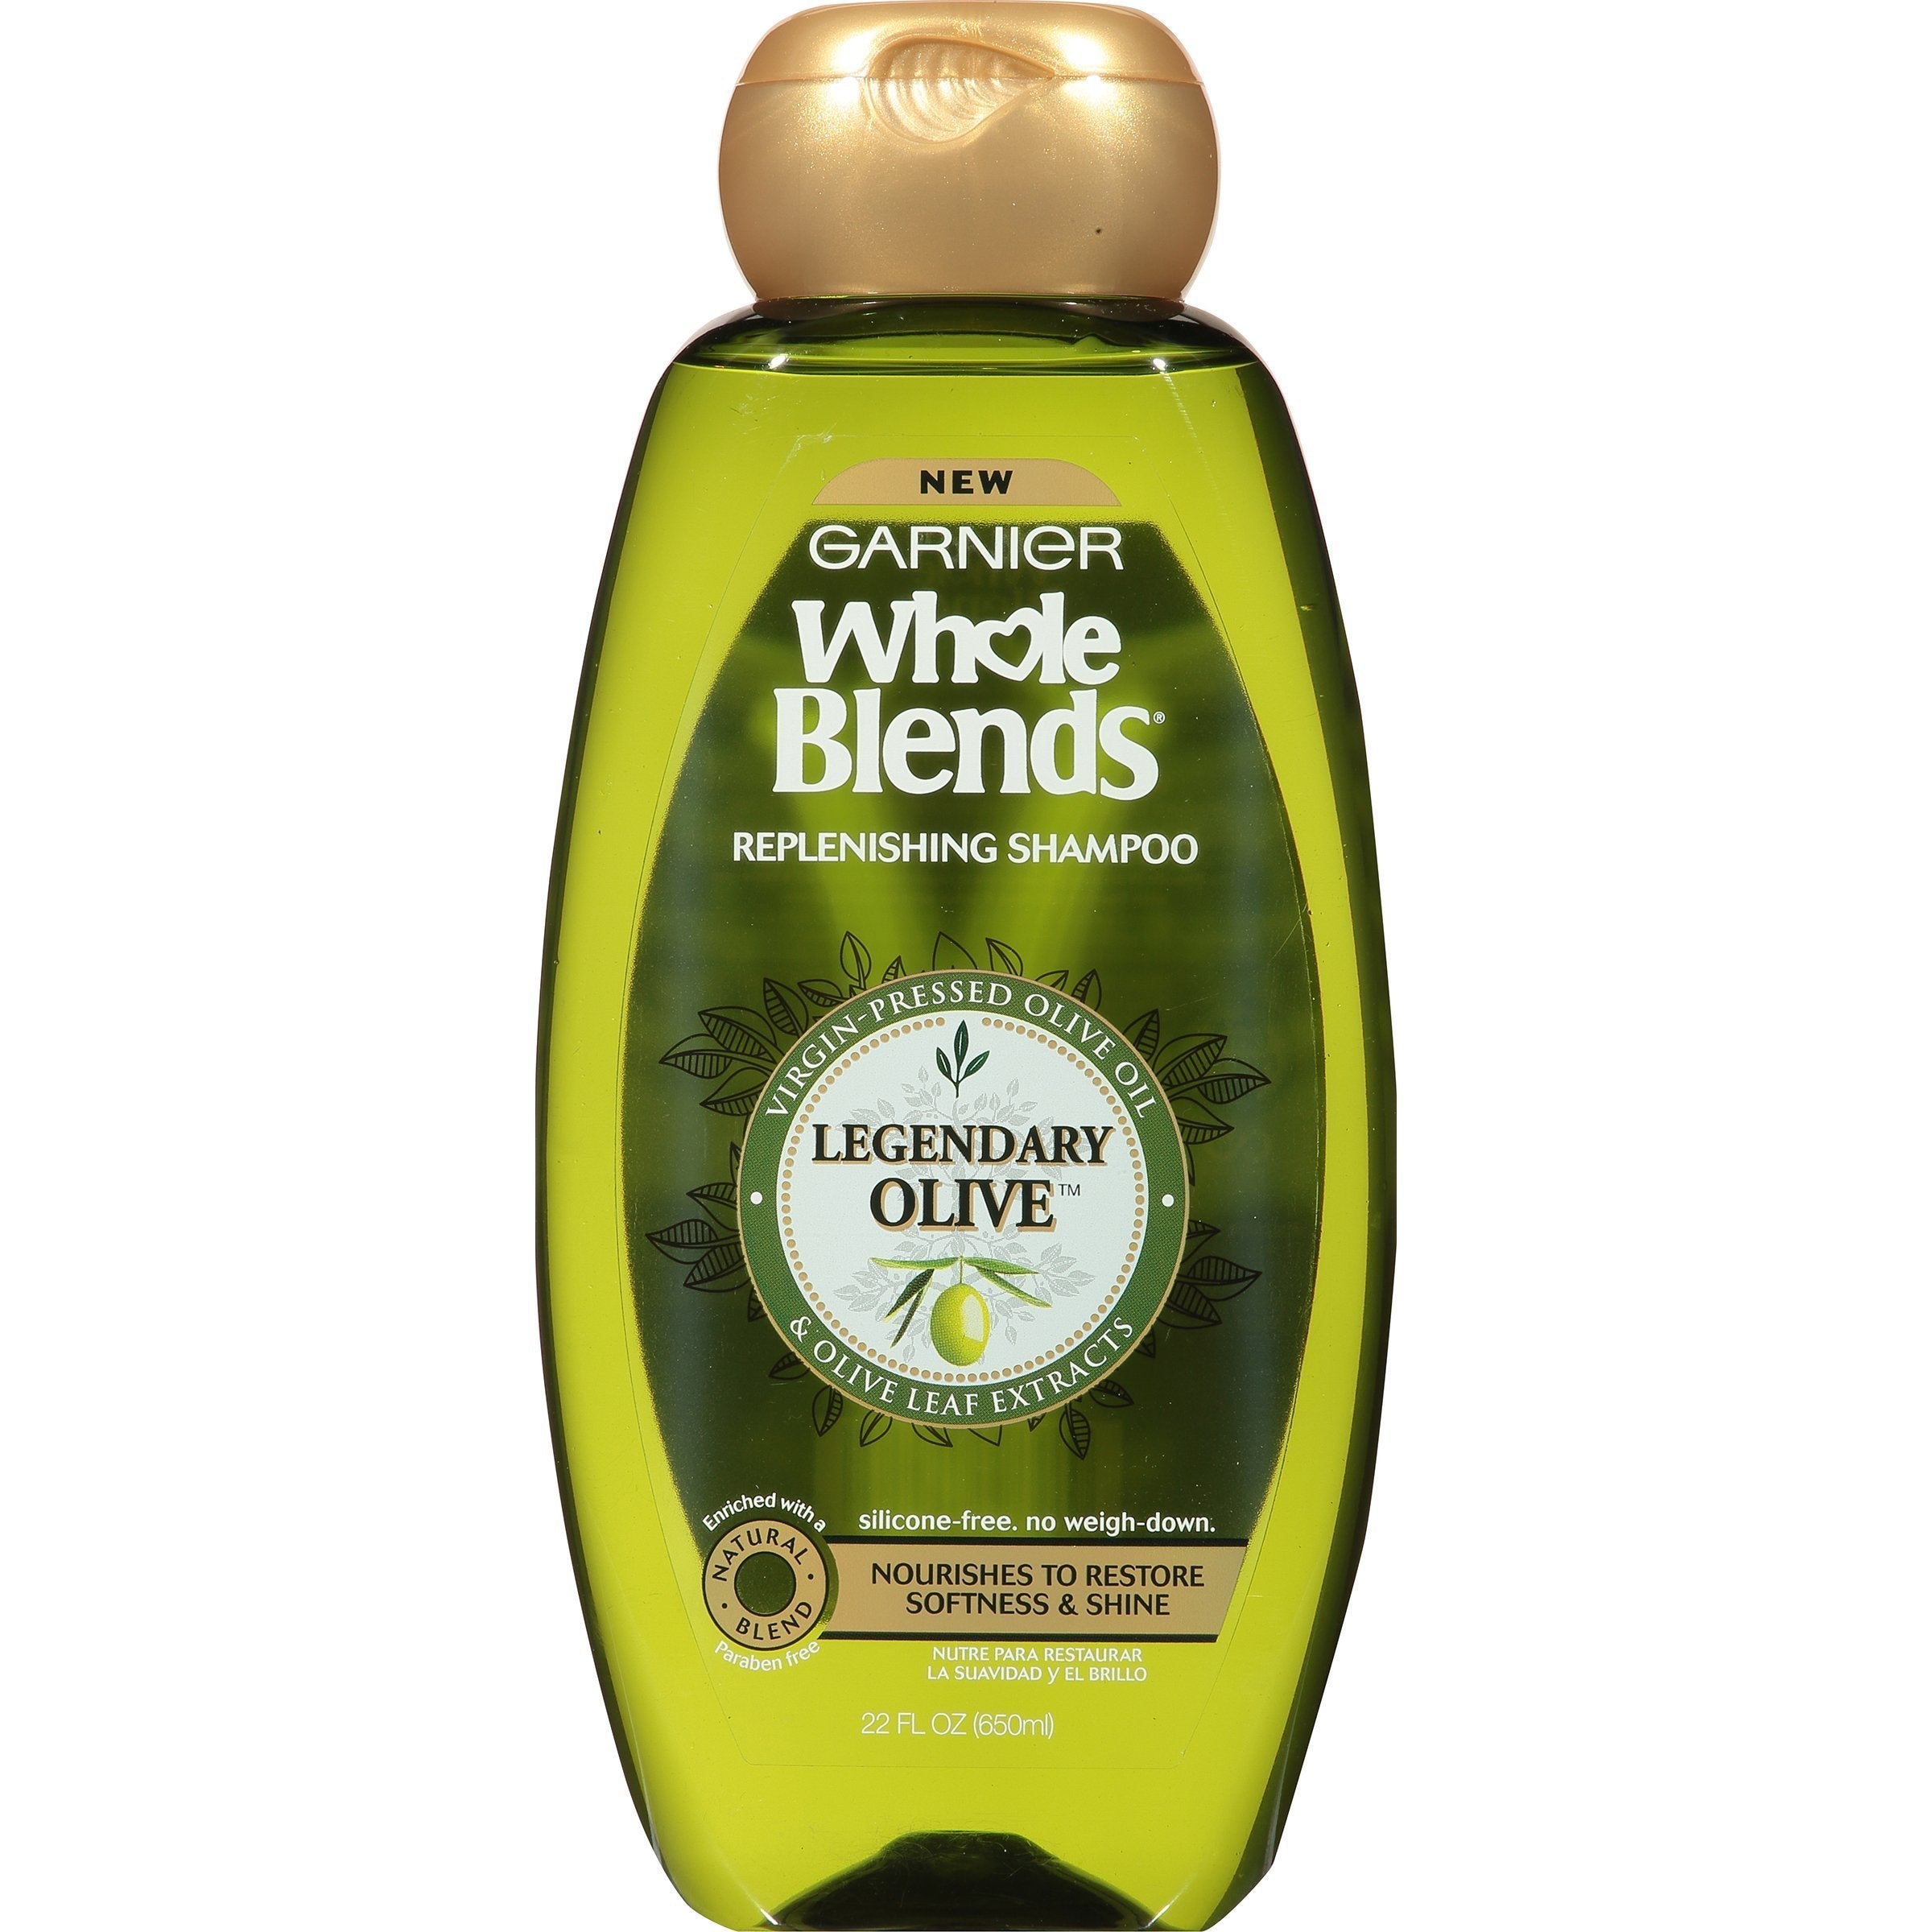 Garnier Whole Blends Replenishing Shampoo Legendary Olive, For Dry Hair, 22 fl. oz.-CaribOnline